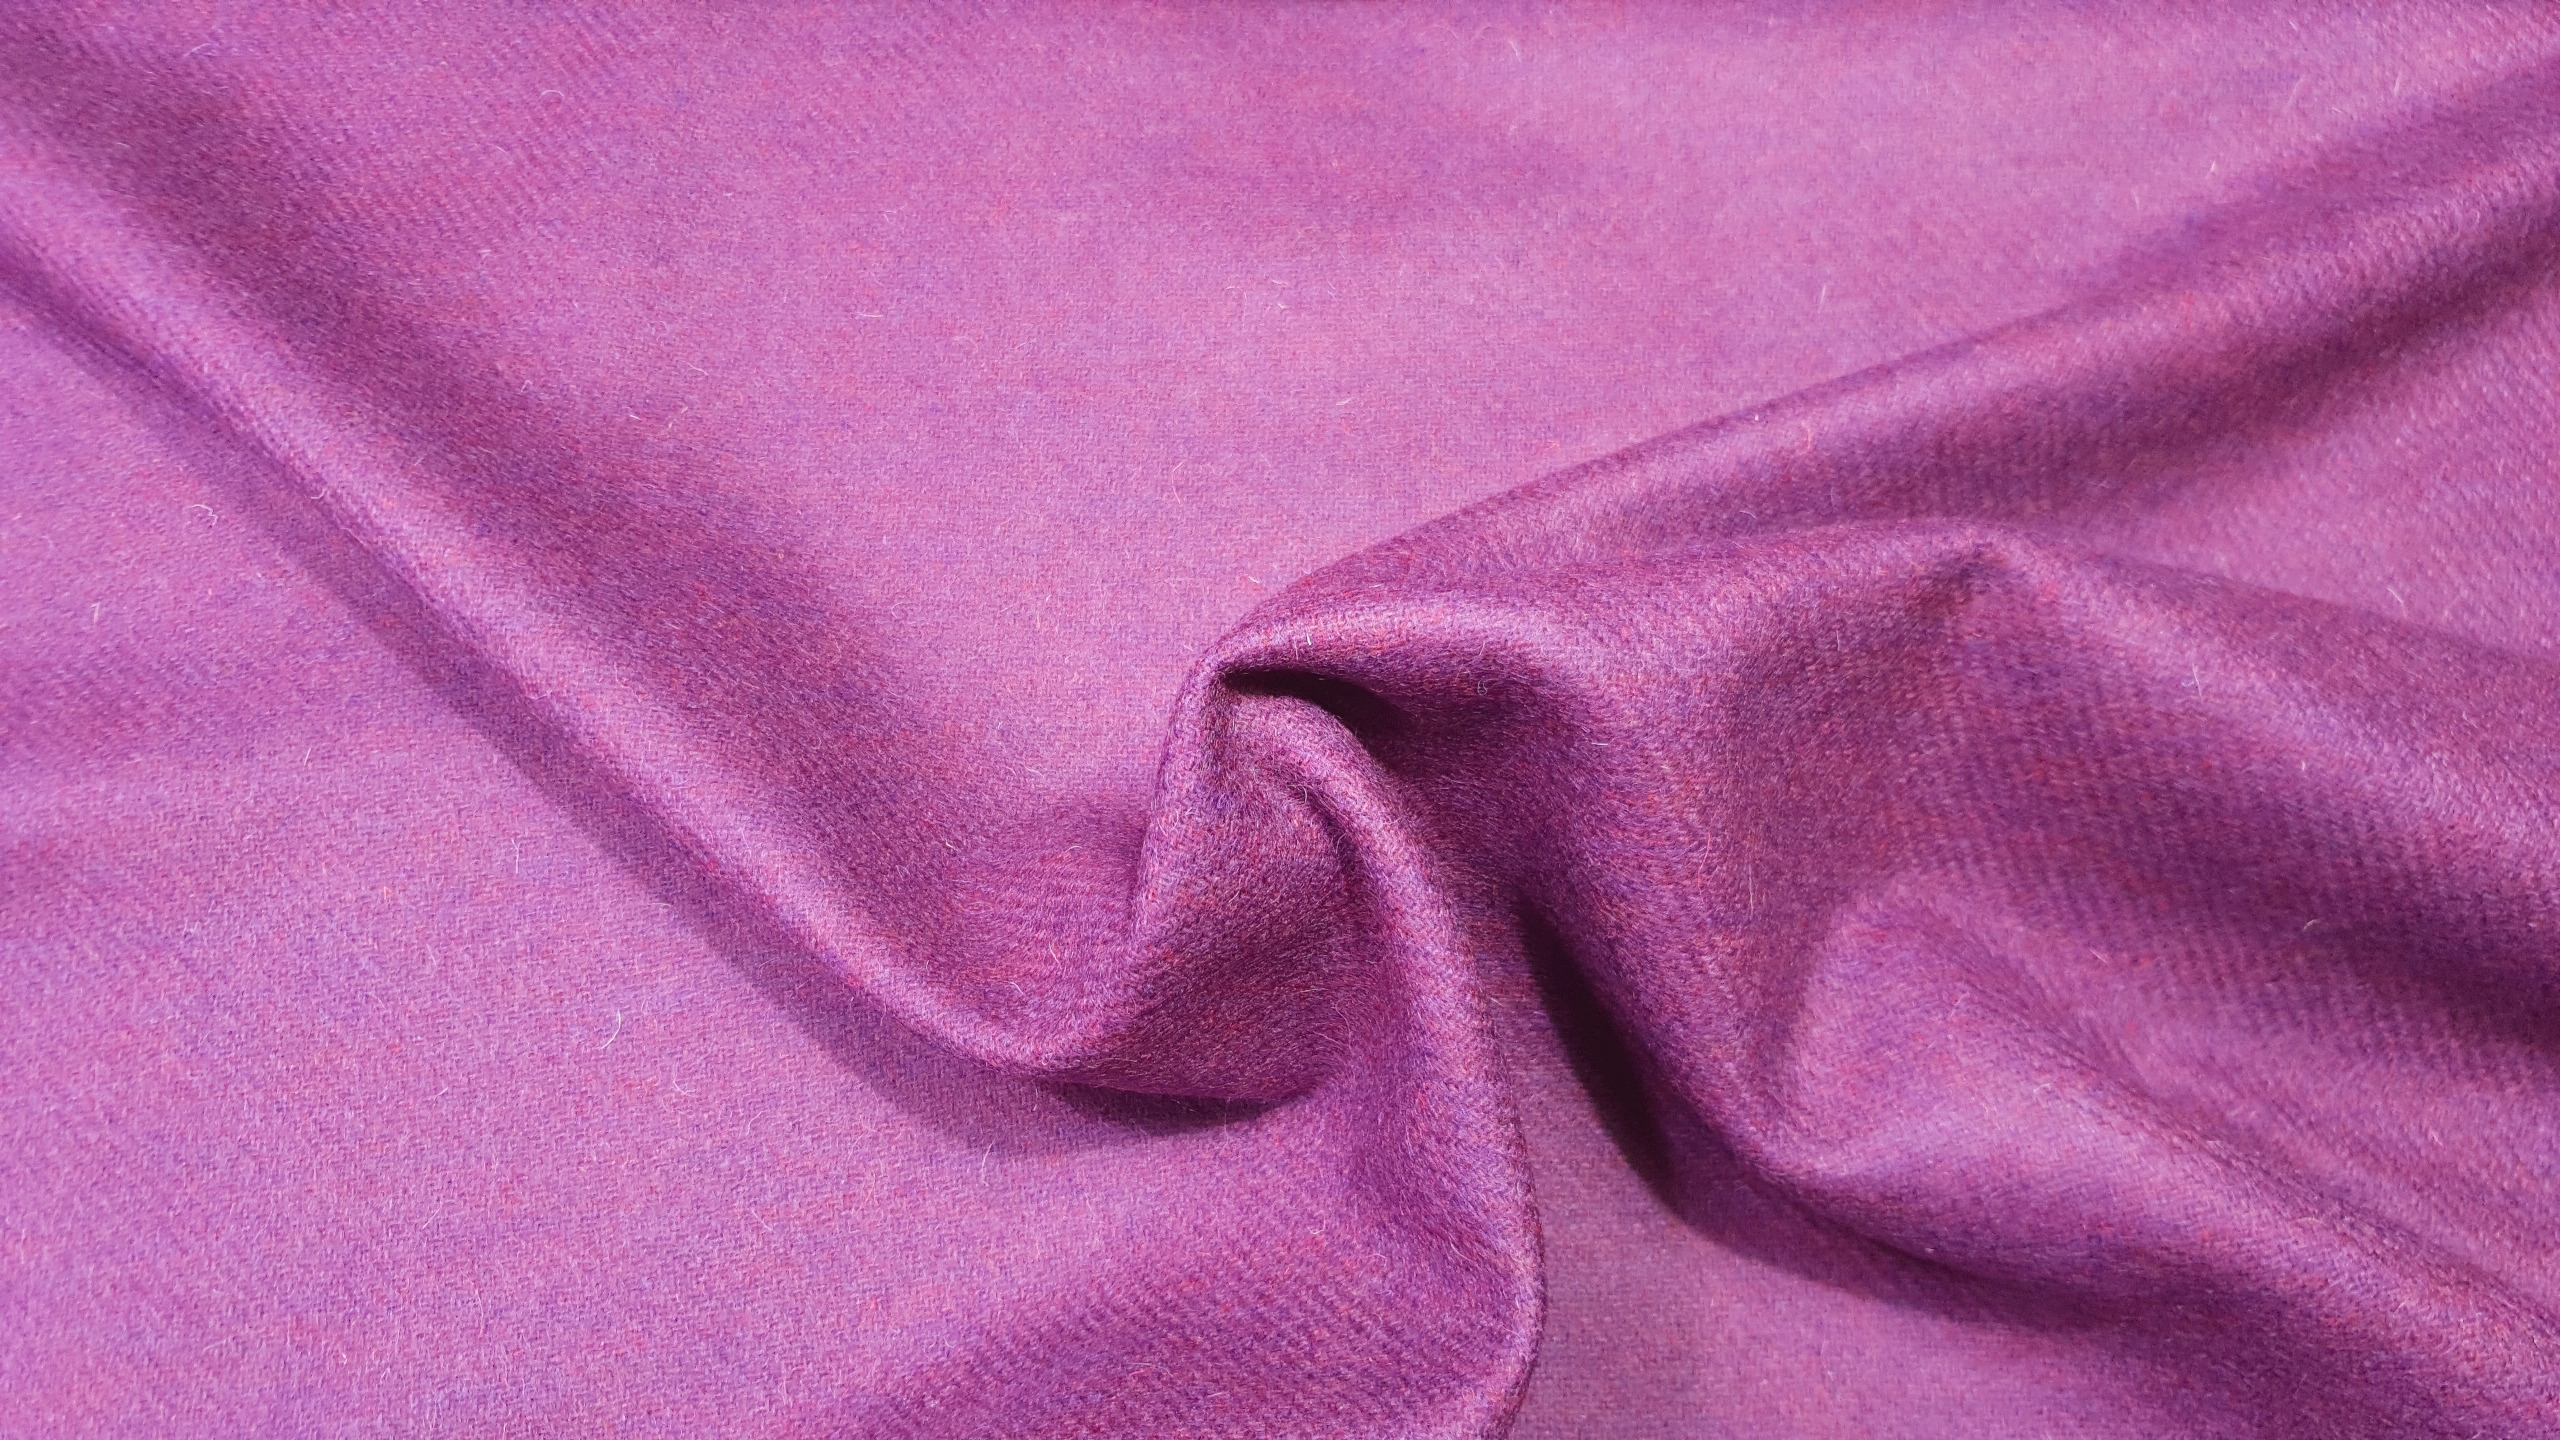 SHETLAND wool tweed- purple pink 23